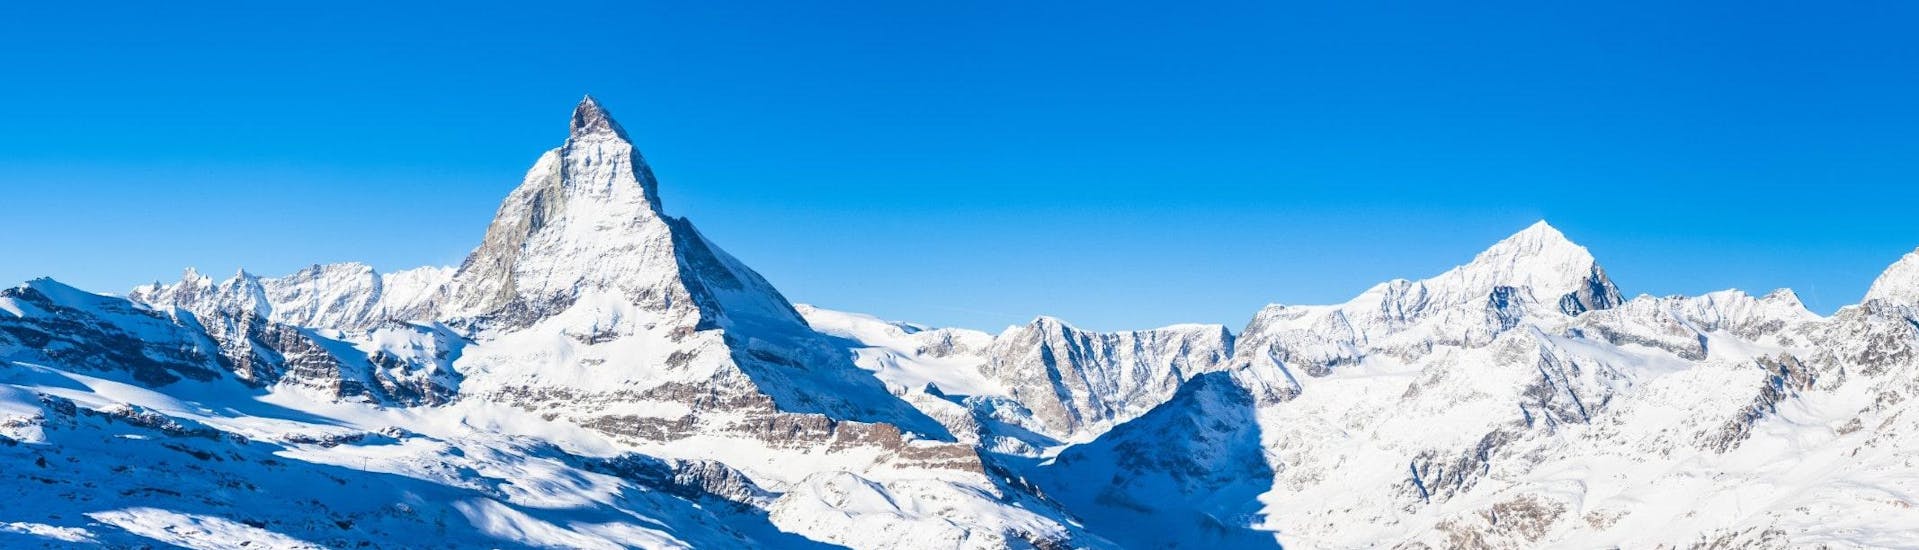 Ausblick auf die sonnige Berglandschaft des Matterhorns während der Skikurse mit den Skischulen in Zermatt in der Schweiz.